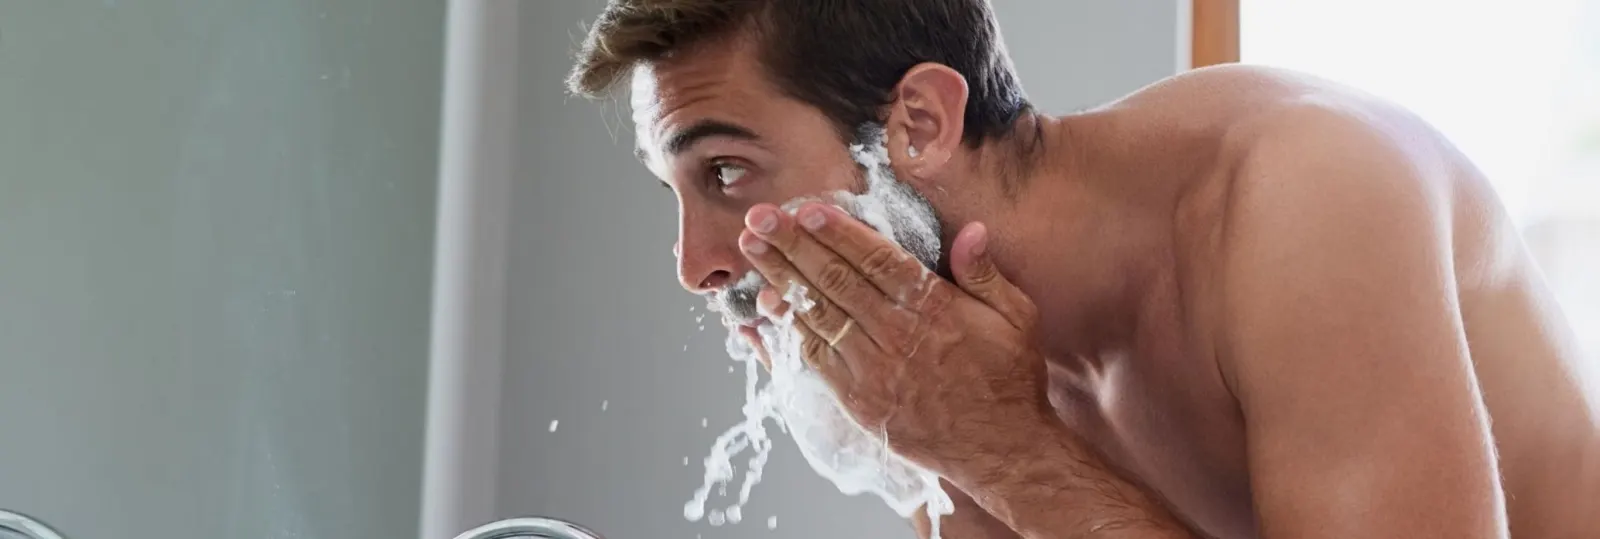 Comment éviter le feu du rasoir et les irritations ?